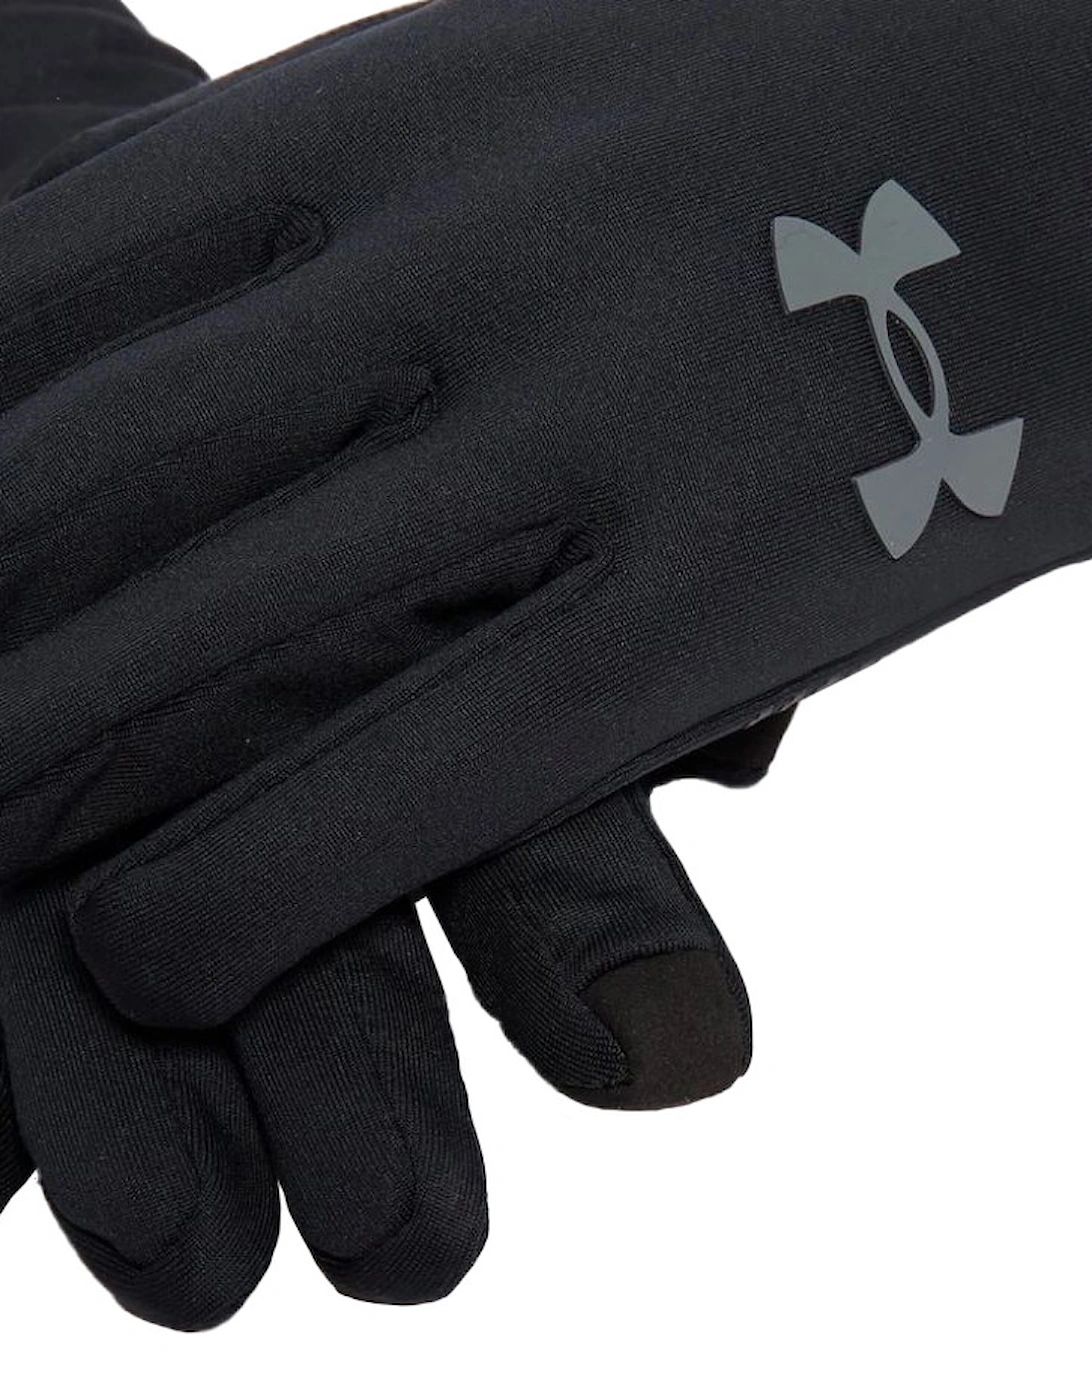 Mens Storm Liner Gloves (Black)